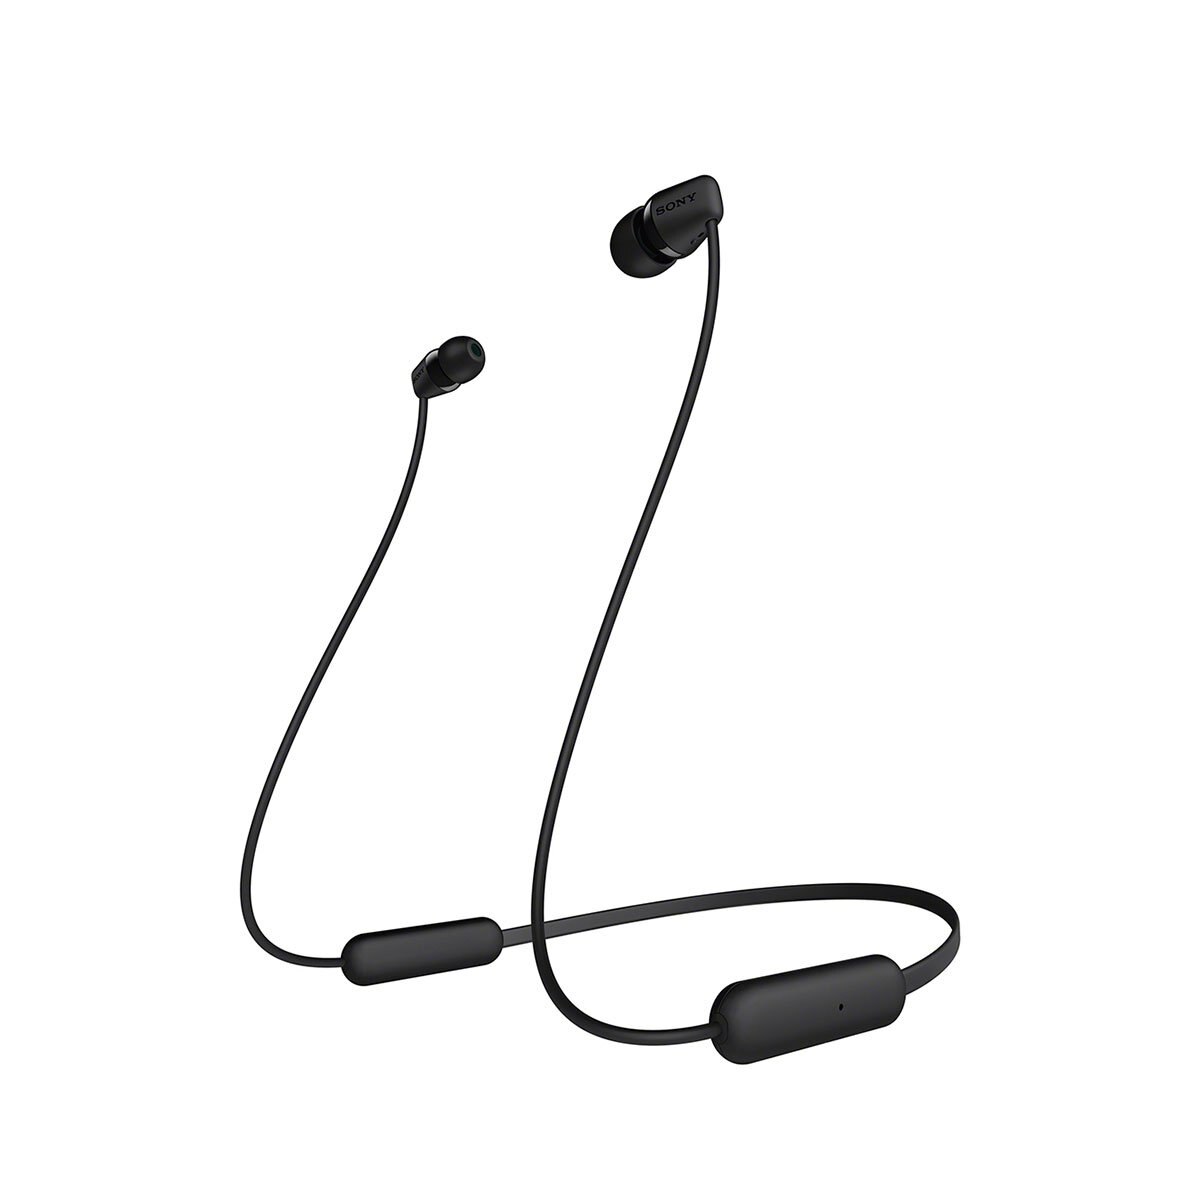 Audífonos In Ear Inalámbricos Wi-C200 Negro Sony